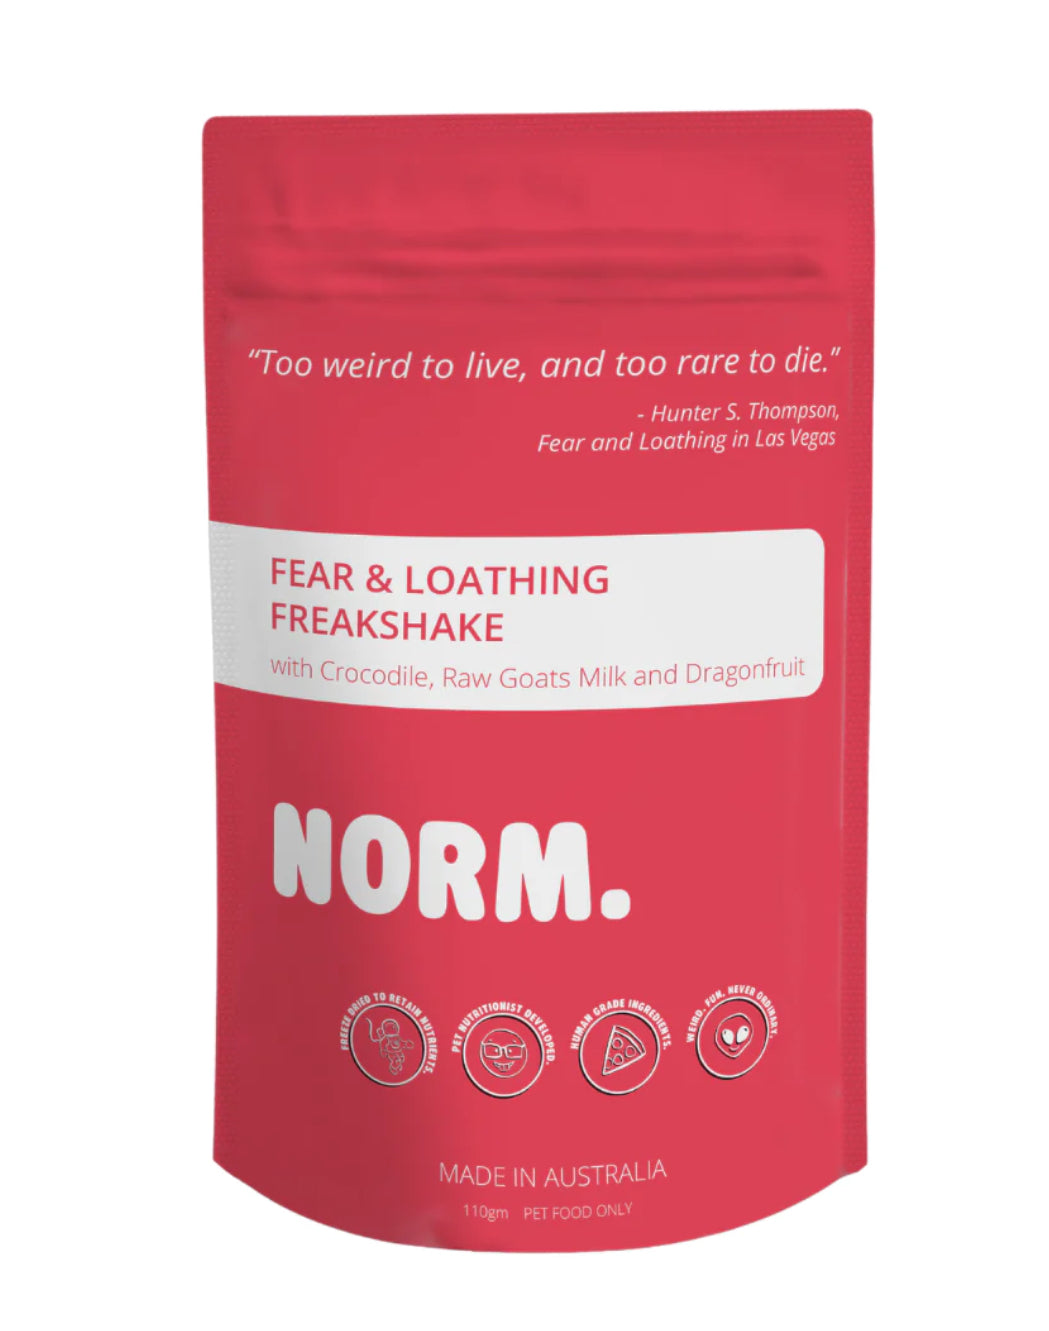 Norm Freakshake - Fear & Loathing